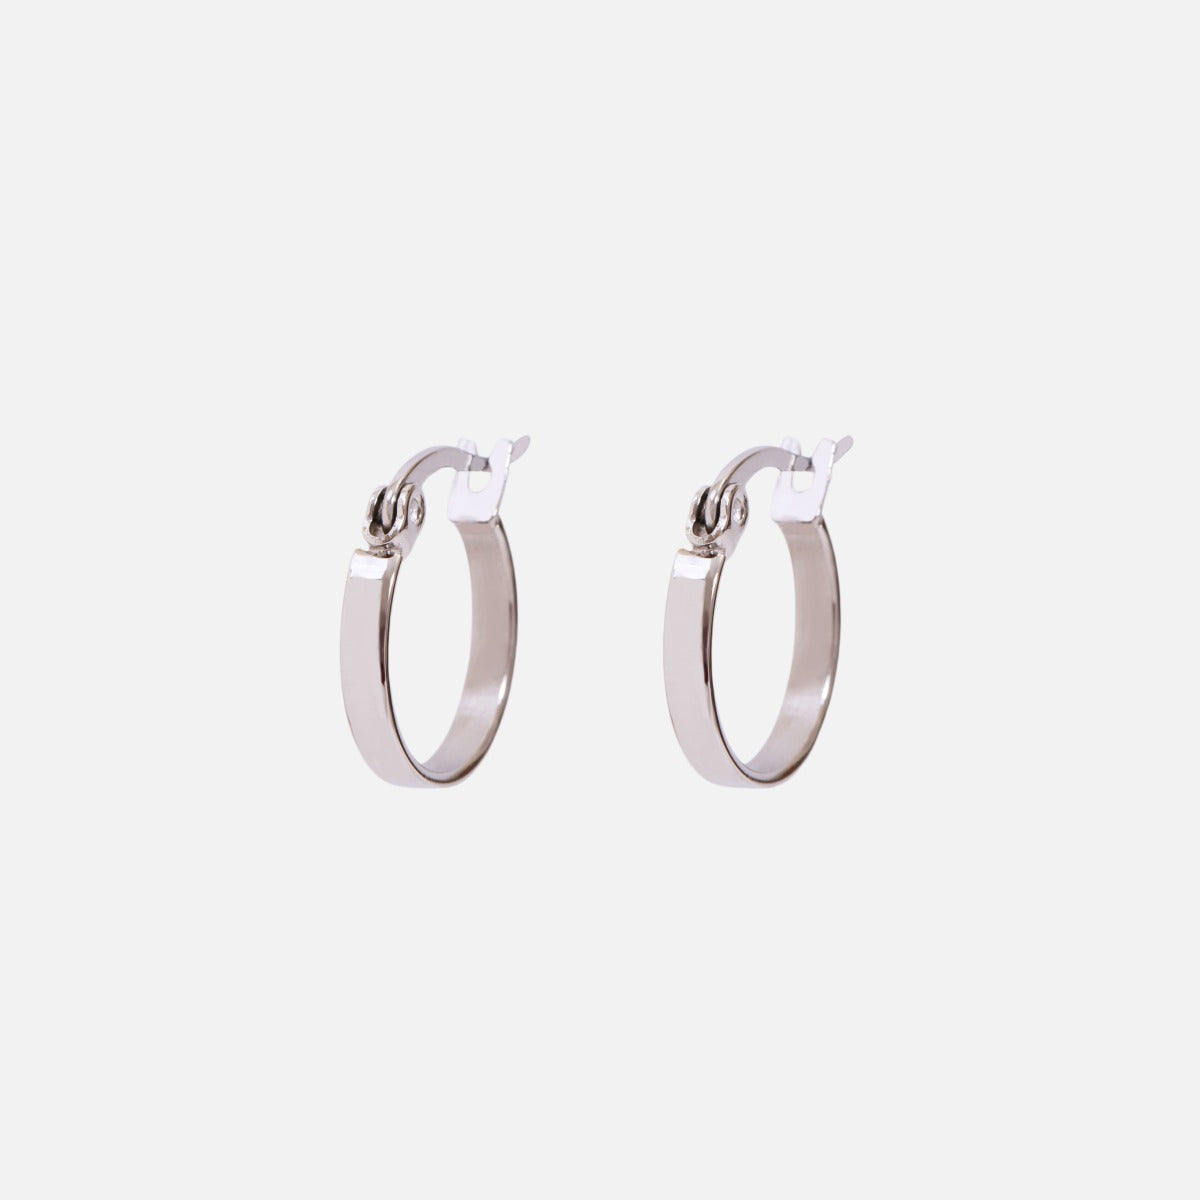 15 mm stainless steel hoop earrings